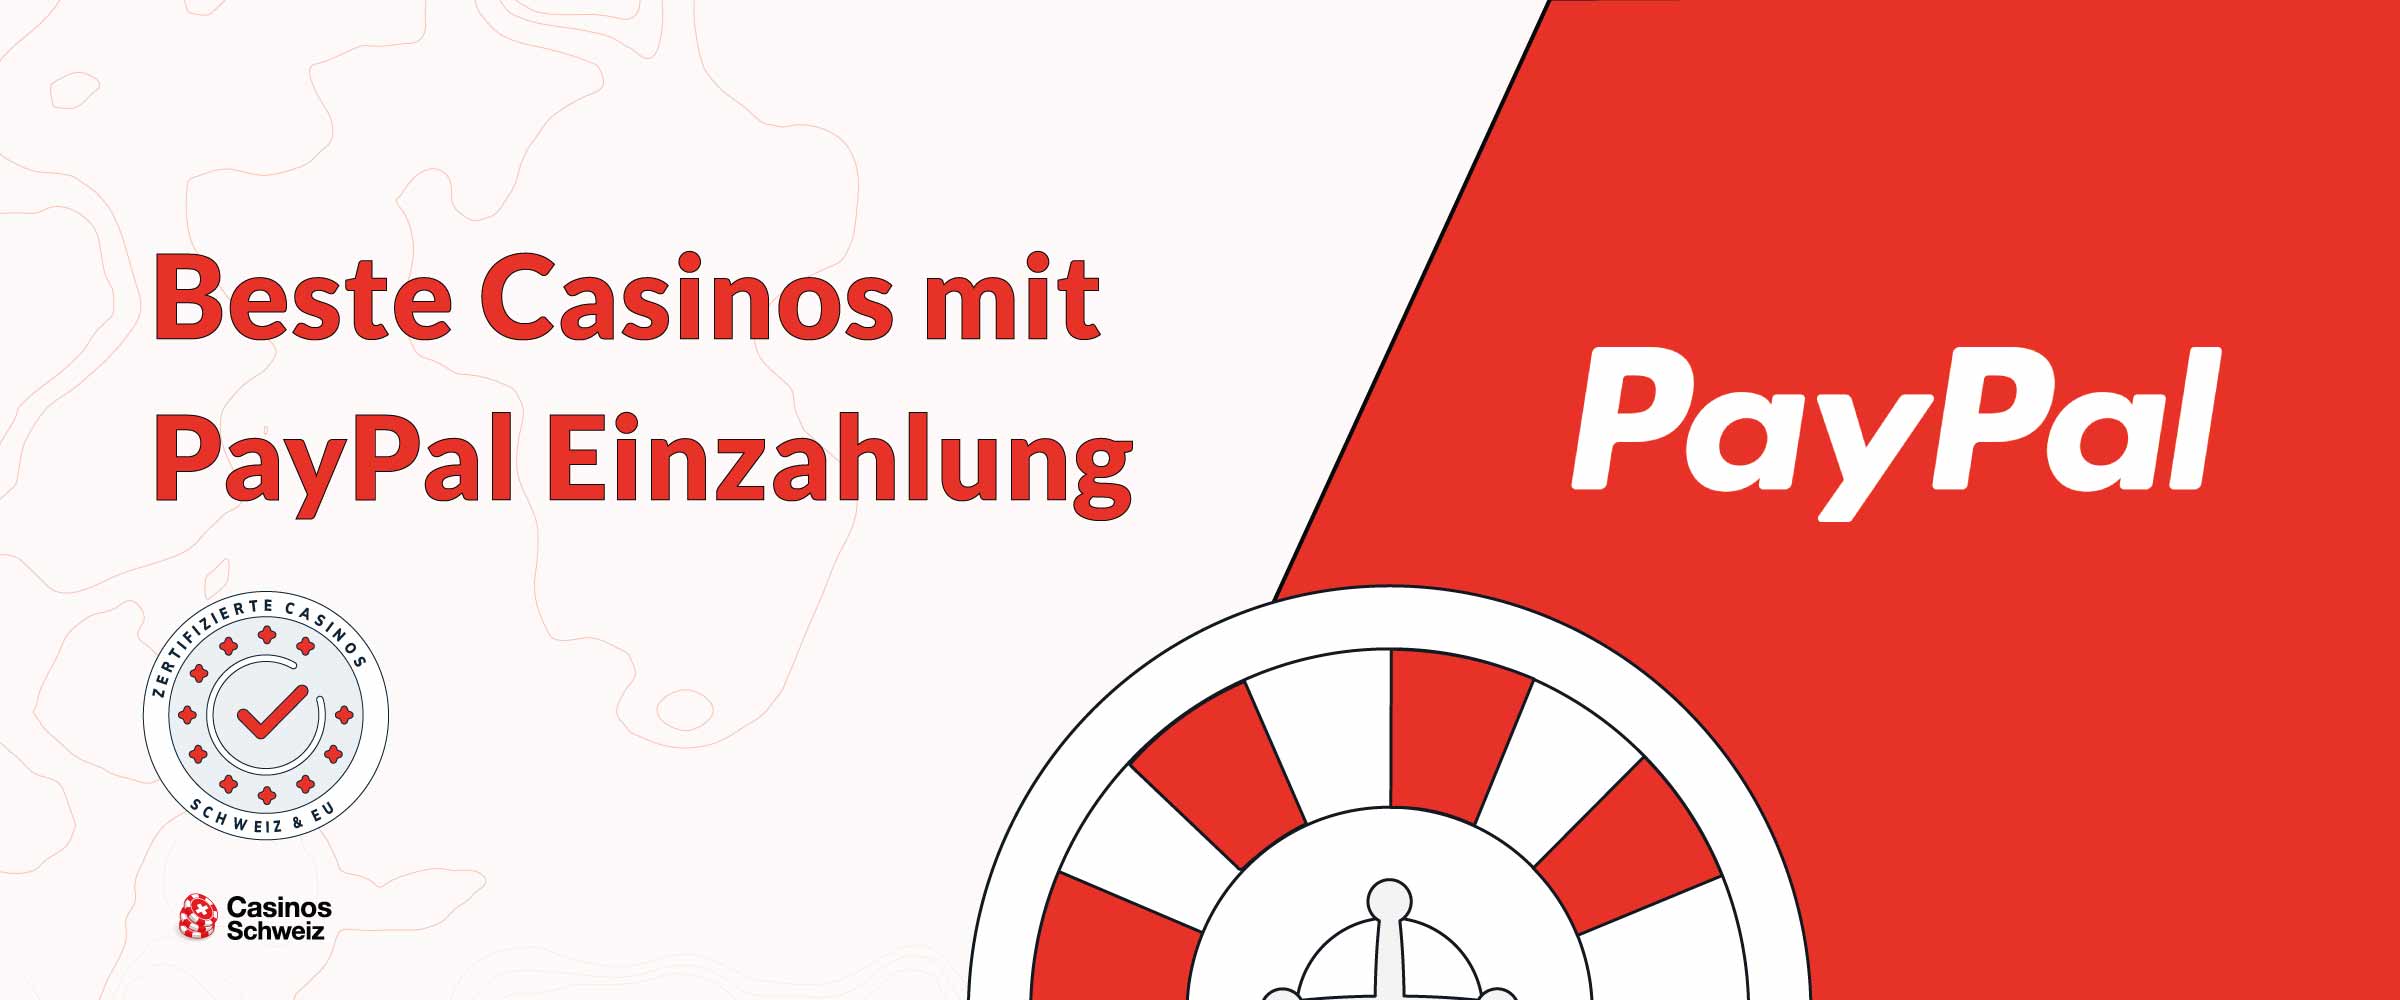 Beste Casinos Schweiz mit PayPal